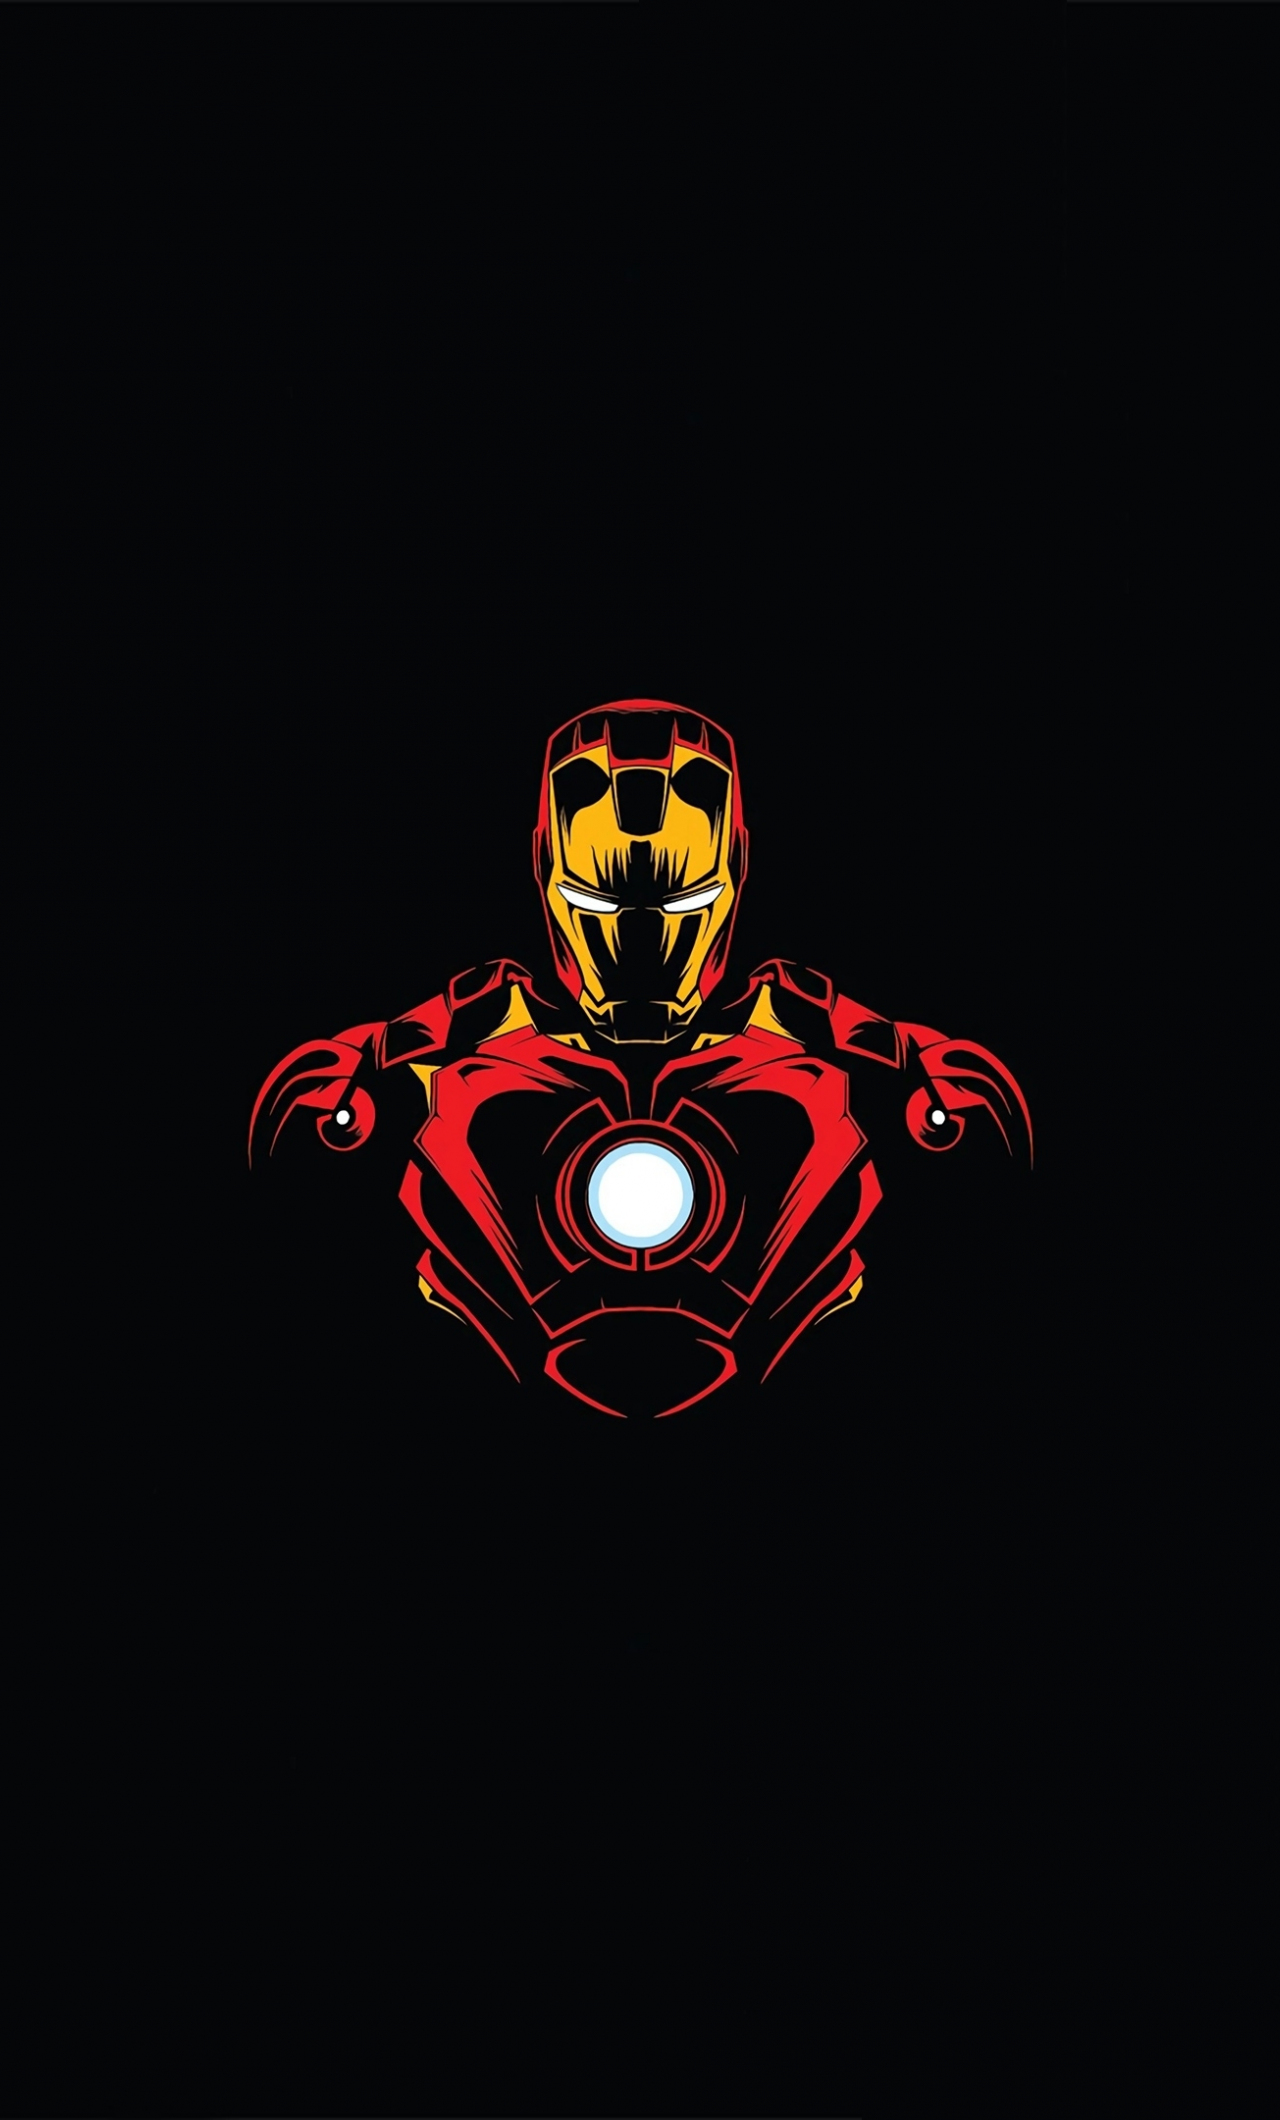 Đơn giản, tối giản và đẳng cấp, đó chính là những gì mà bức hình nền Iron Man Minimalist iPhone Wallpaper mang lại. Với sự đơn giản này, chúng ta có thể tập trung vào điều quan trọng nhất: Thiên tài kỹ thuật viên Tony Stark và những trang phục vô cùng thu hút.